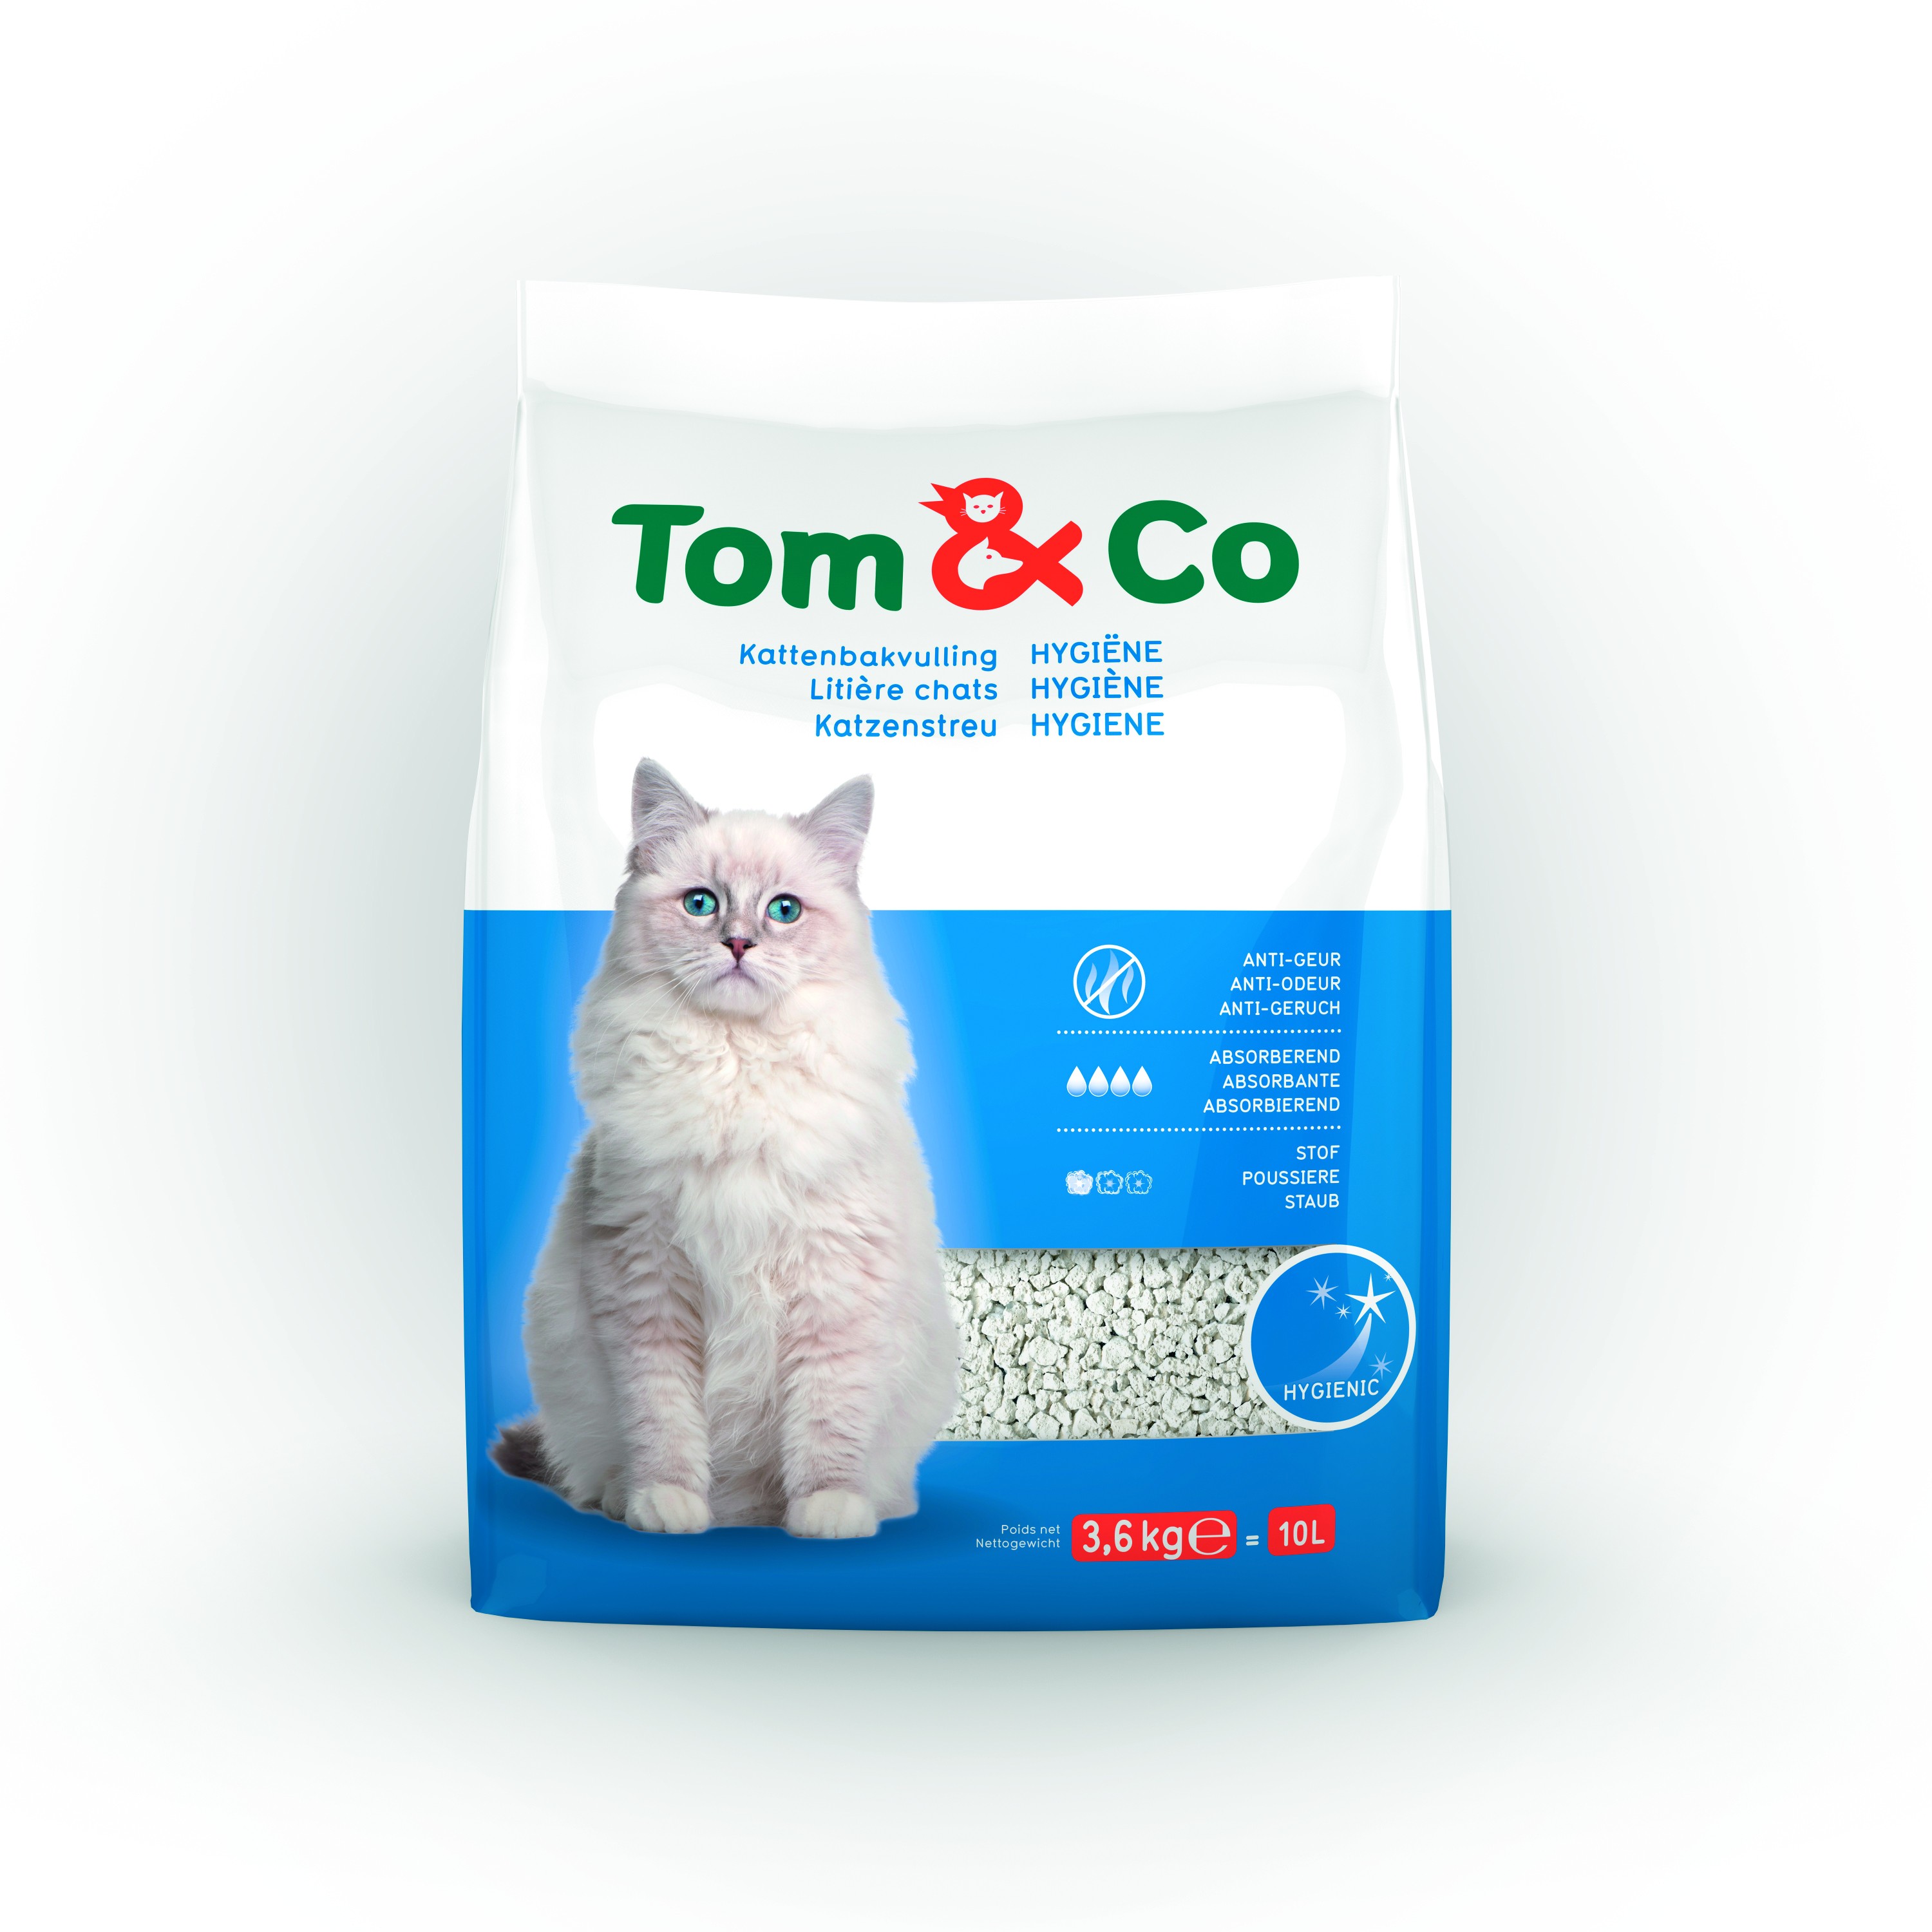 Tom&Co Kattenbakvulling Hygiene 10L